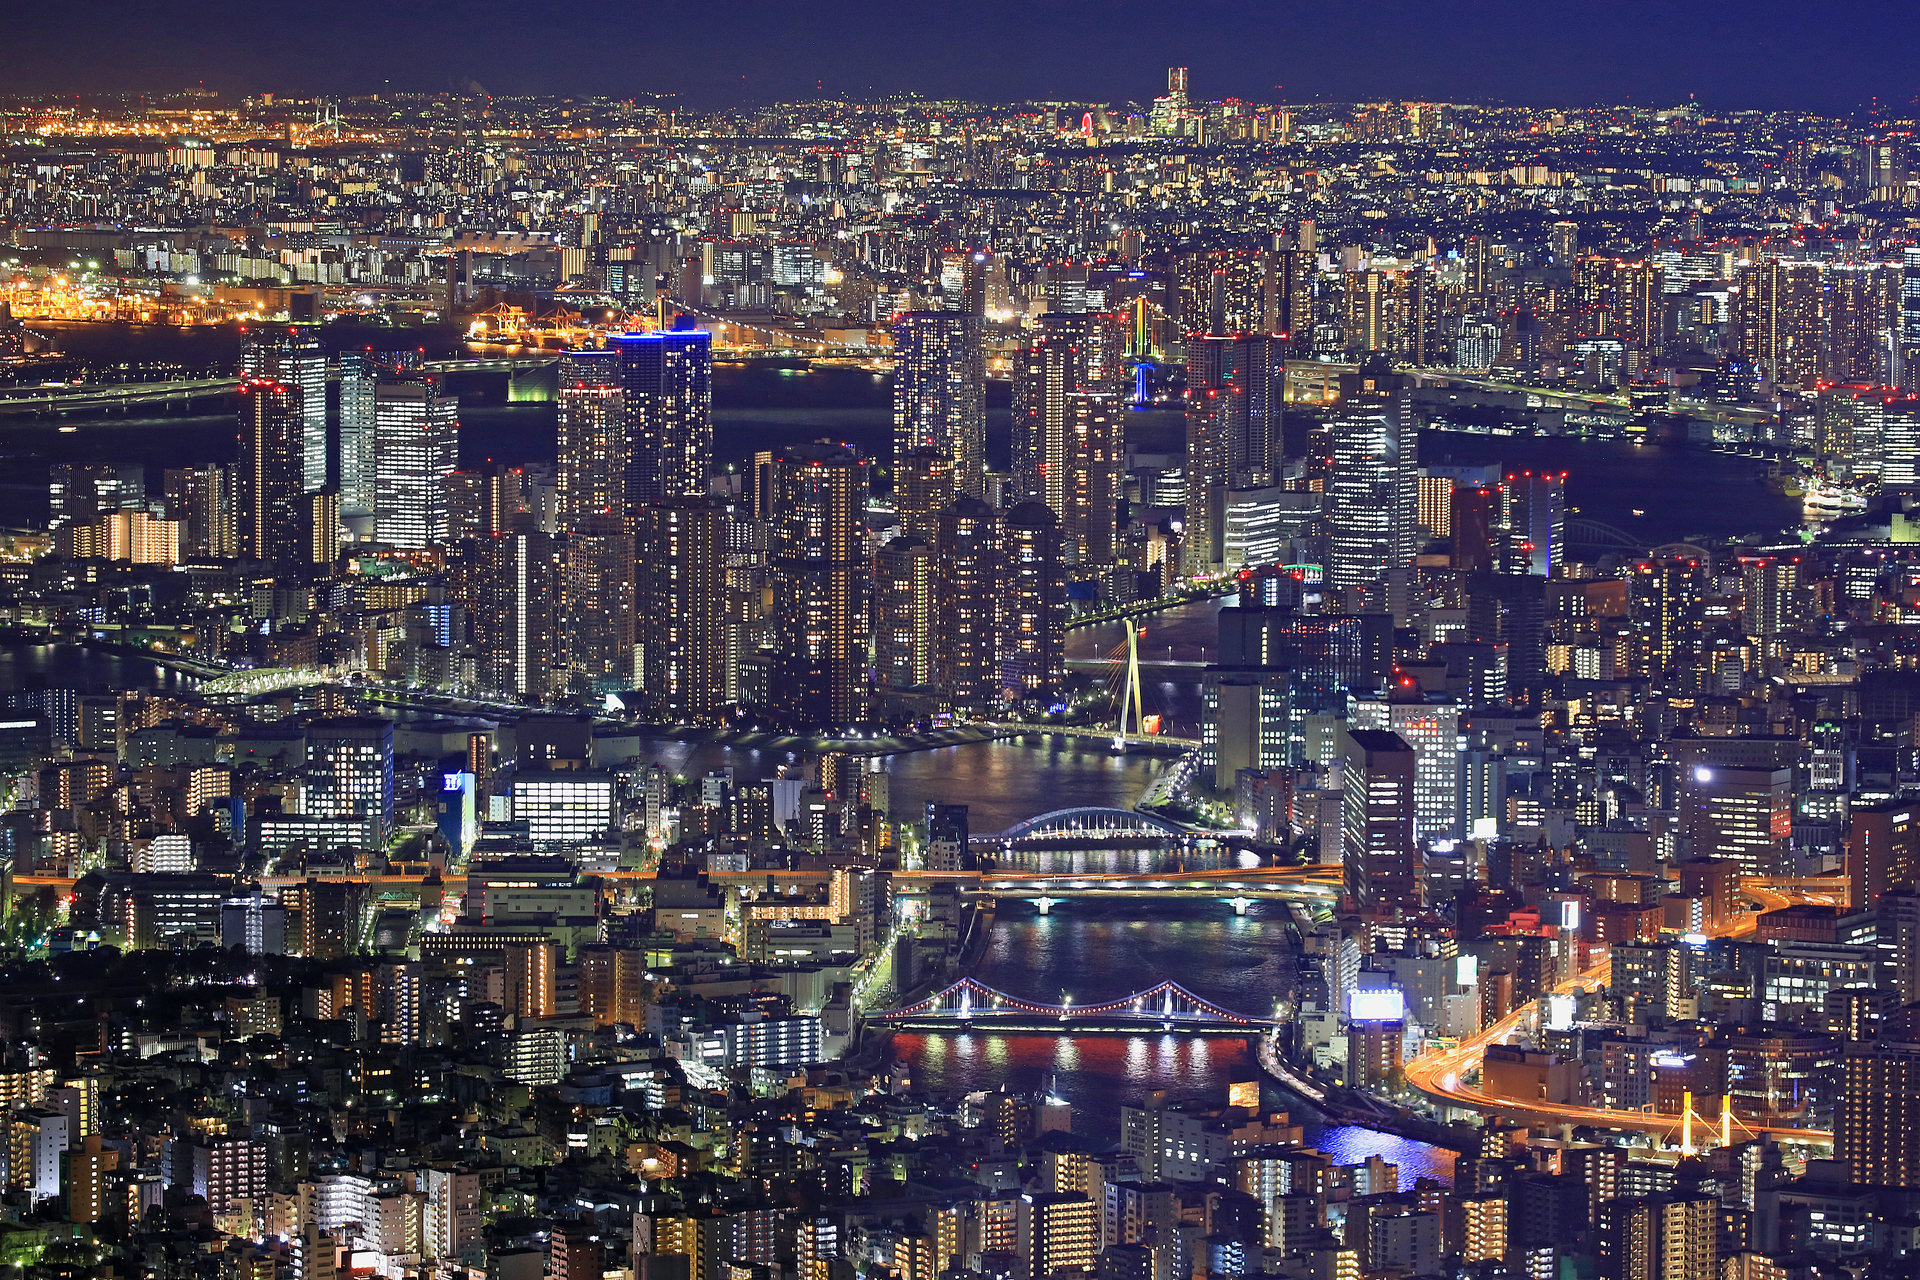 夜景 花火 イルミ スカイツリーから見る東京夜景 壁紙19x1280 壁紙館